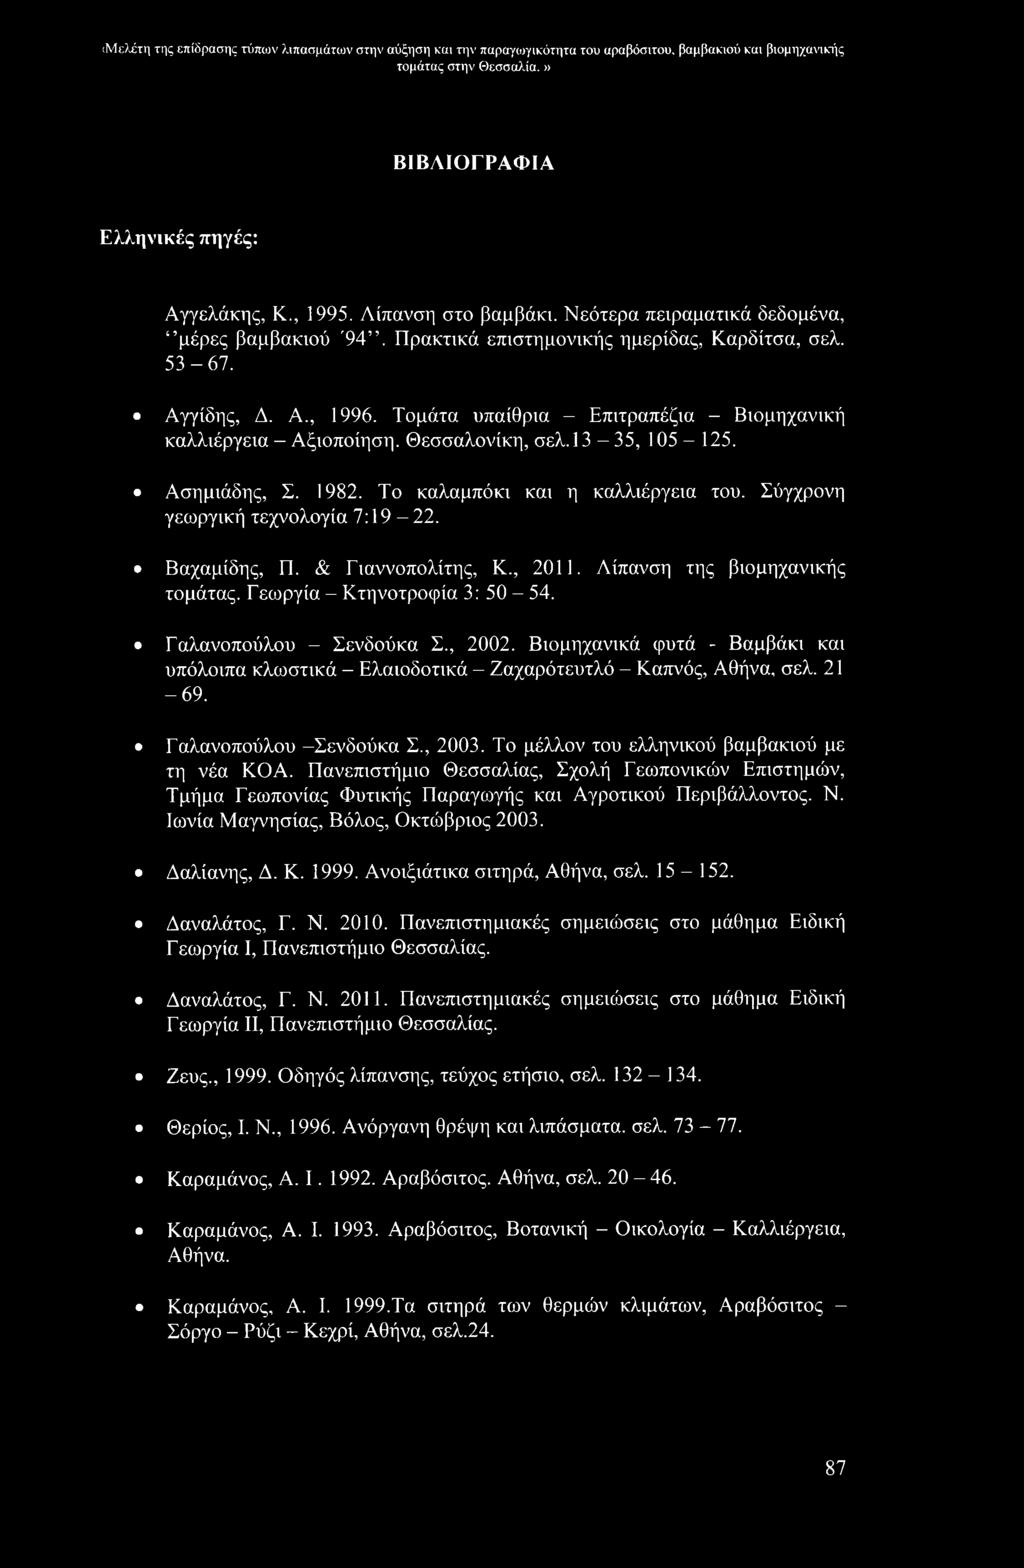 Τομάτα υπαίθρια - Επιτραπέζια - Βιομηχανική καλλιέργεια - Αξιοποίηση. Θεσσαλονίκη, σελ. 13-35, 105-125. Ασημιάδης, Σ. 1982. Το καλαμπόκι και η καλλιέργεια του. Σύγχρονη γεωργική τεχνολογία 7:19-22.